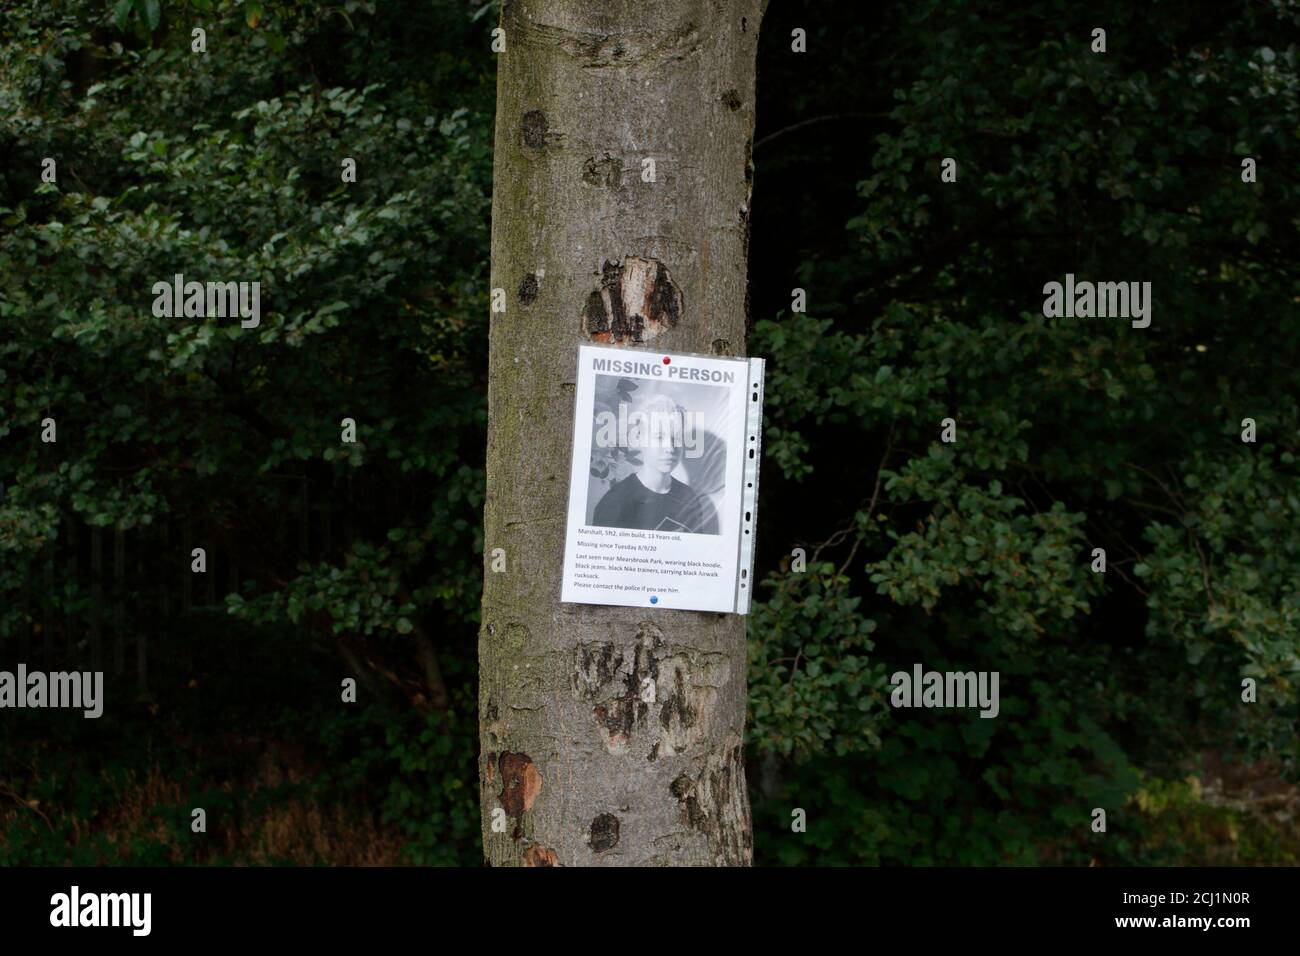 Affiche adolescente manquante, épinglée à un arbre, Sheffield, Angleterre, Royaume-Uni Banque D'Images